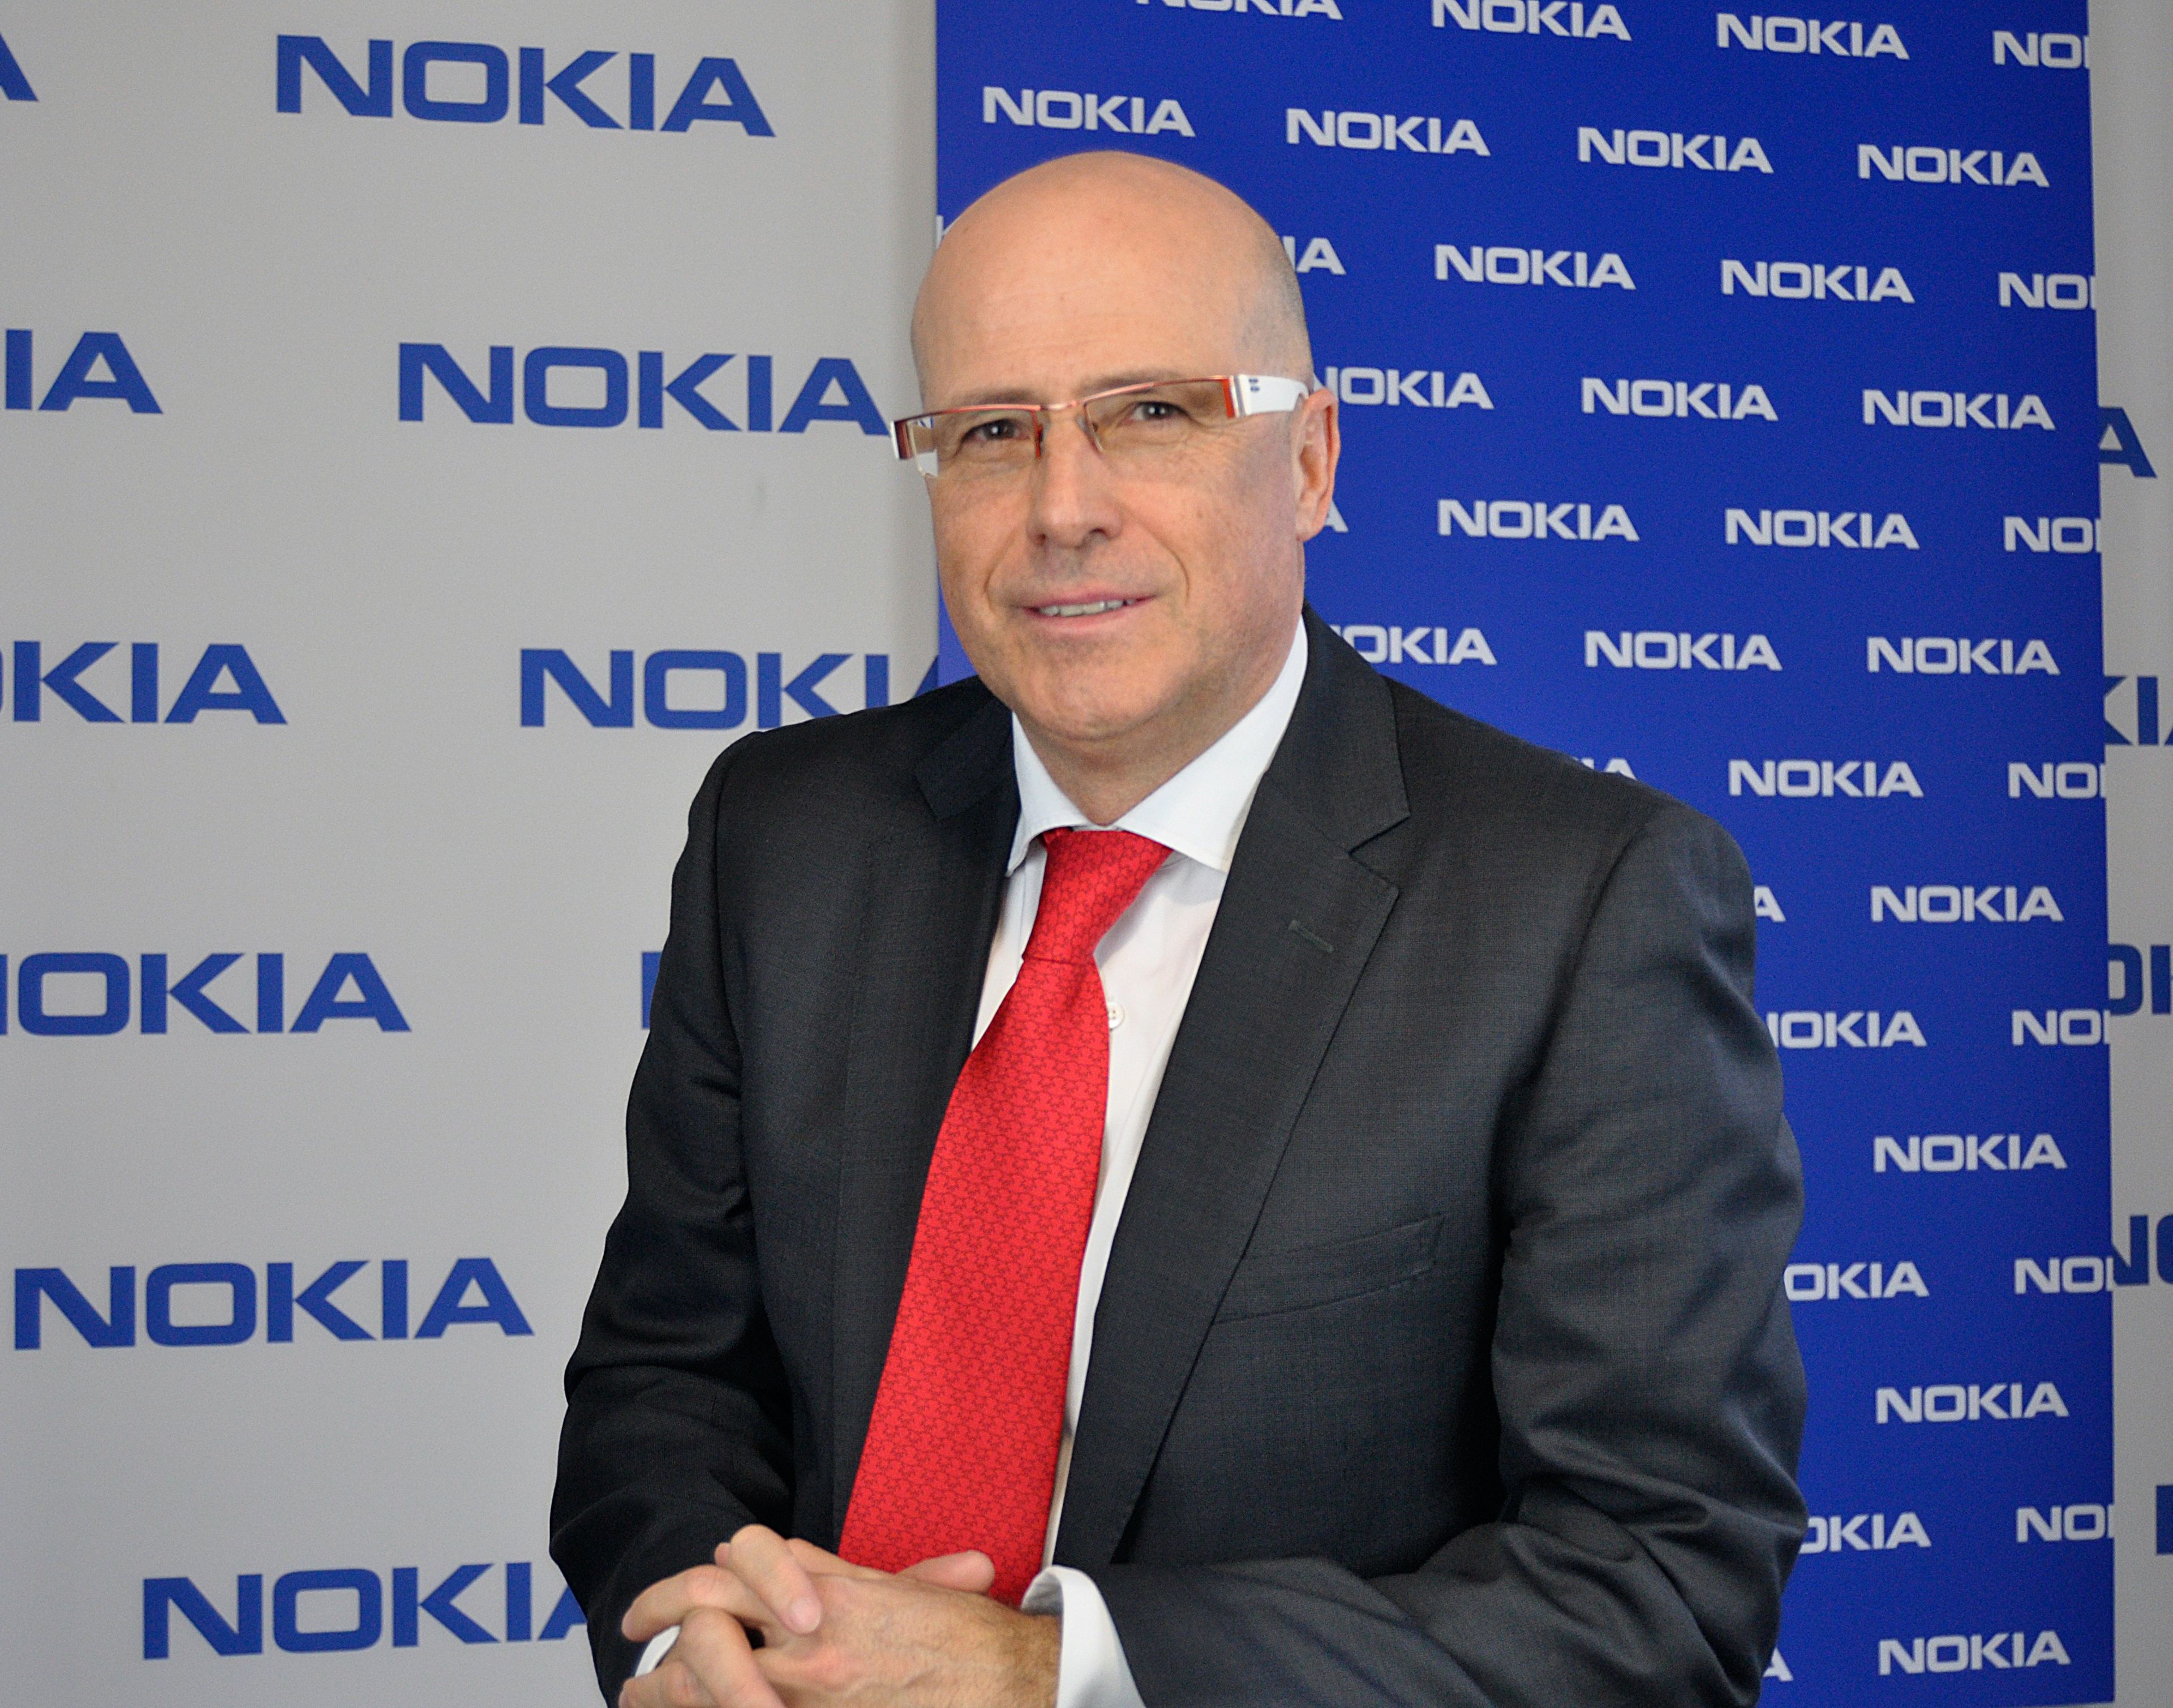 Ignacio Gallego Nokia